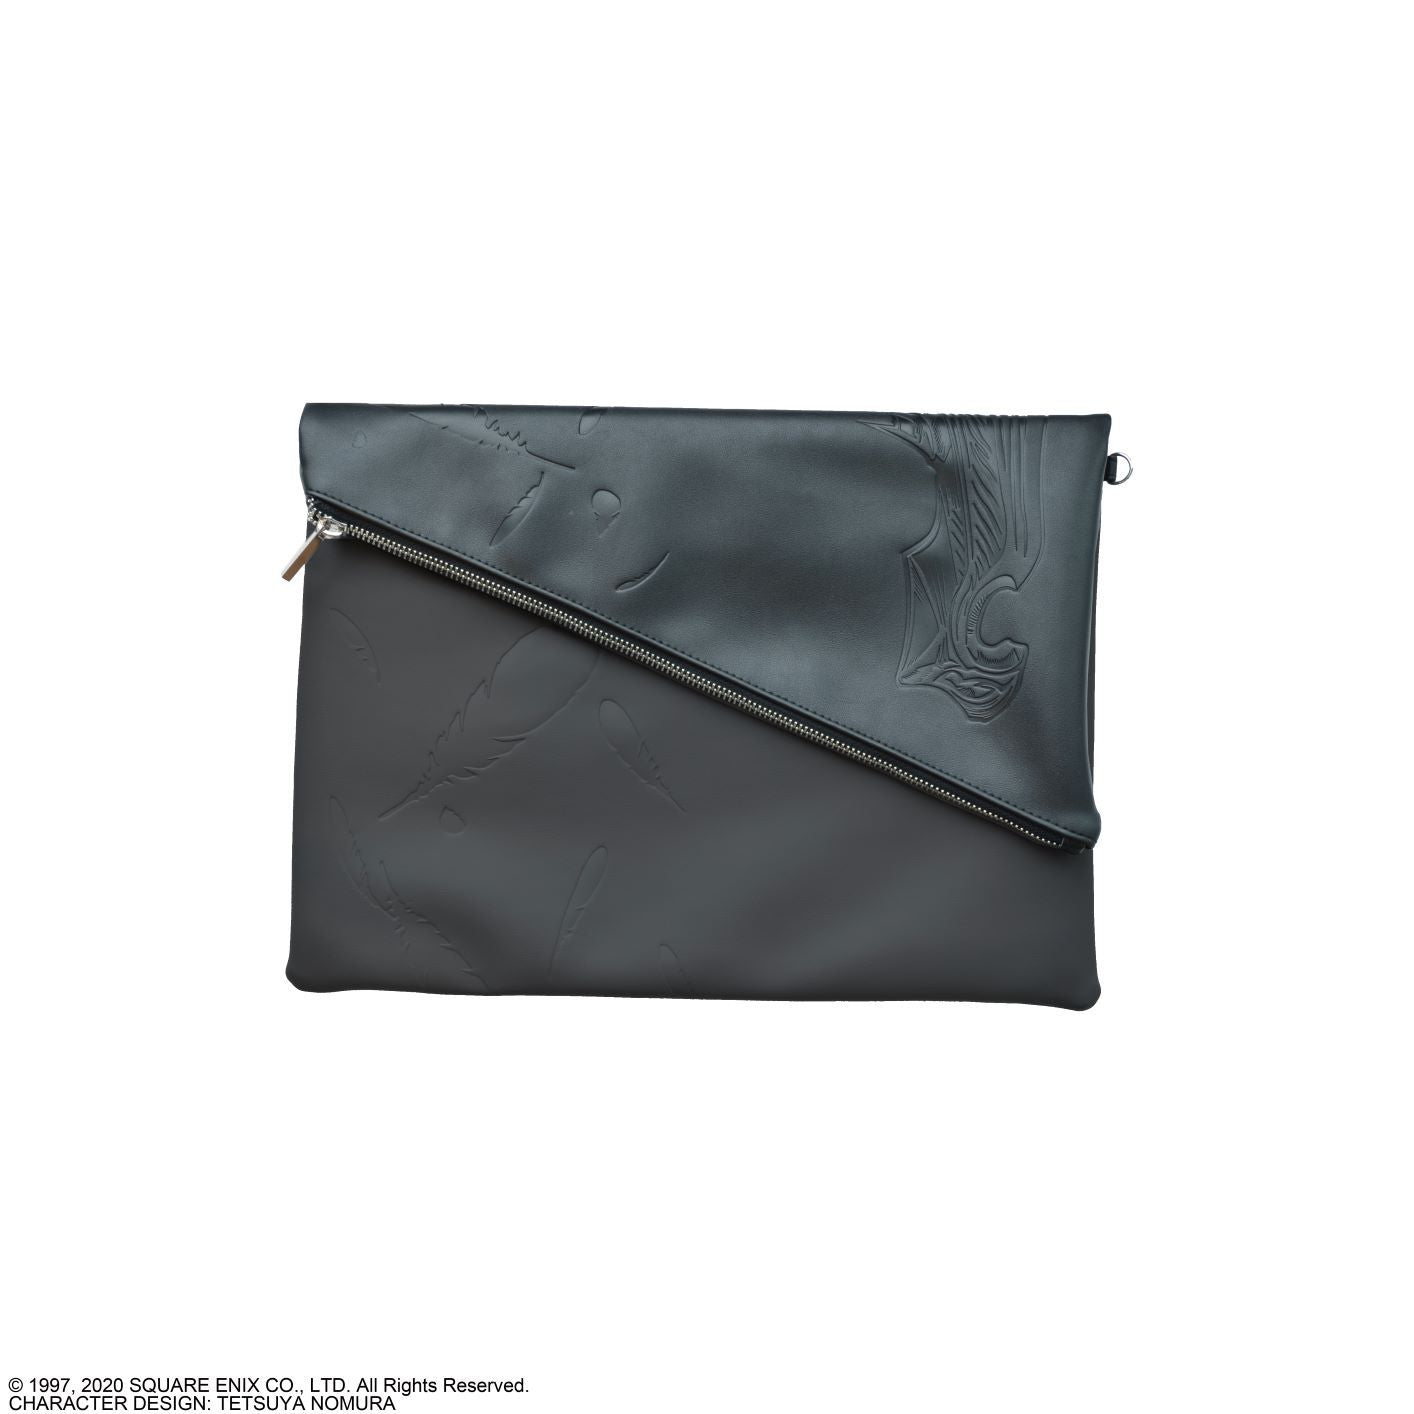 Final Fantasy VII Sephiroth Clutch Bag